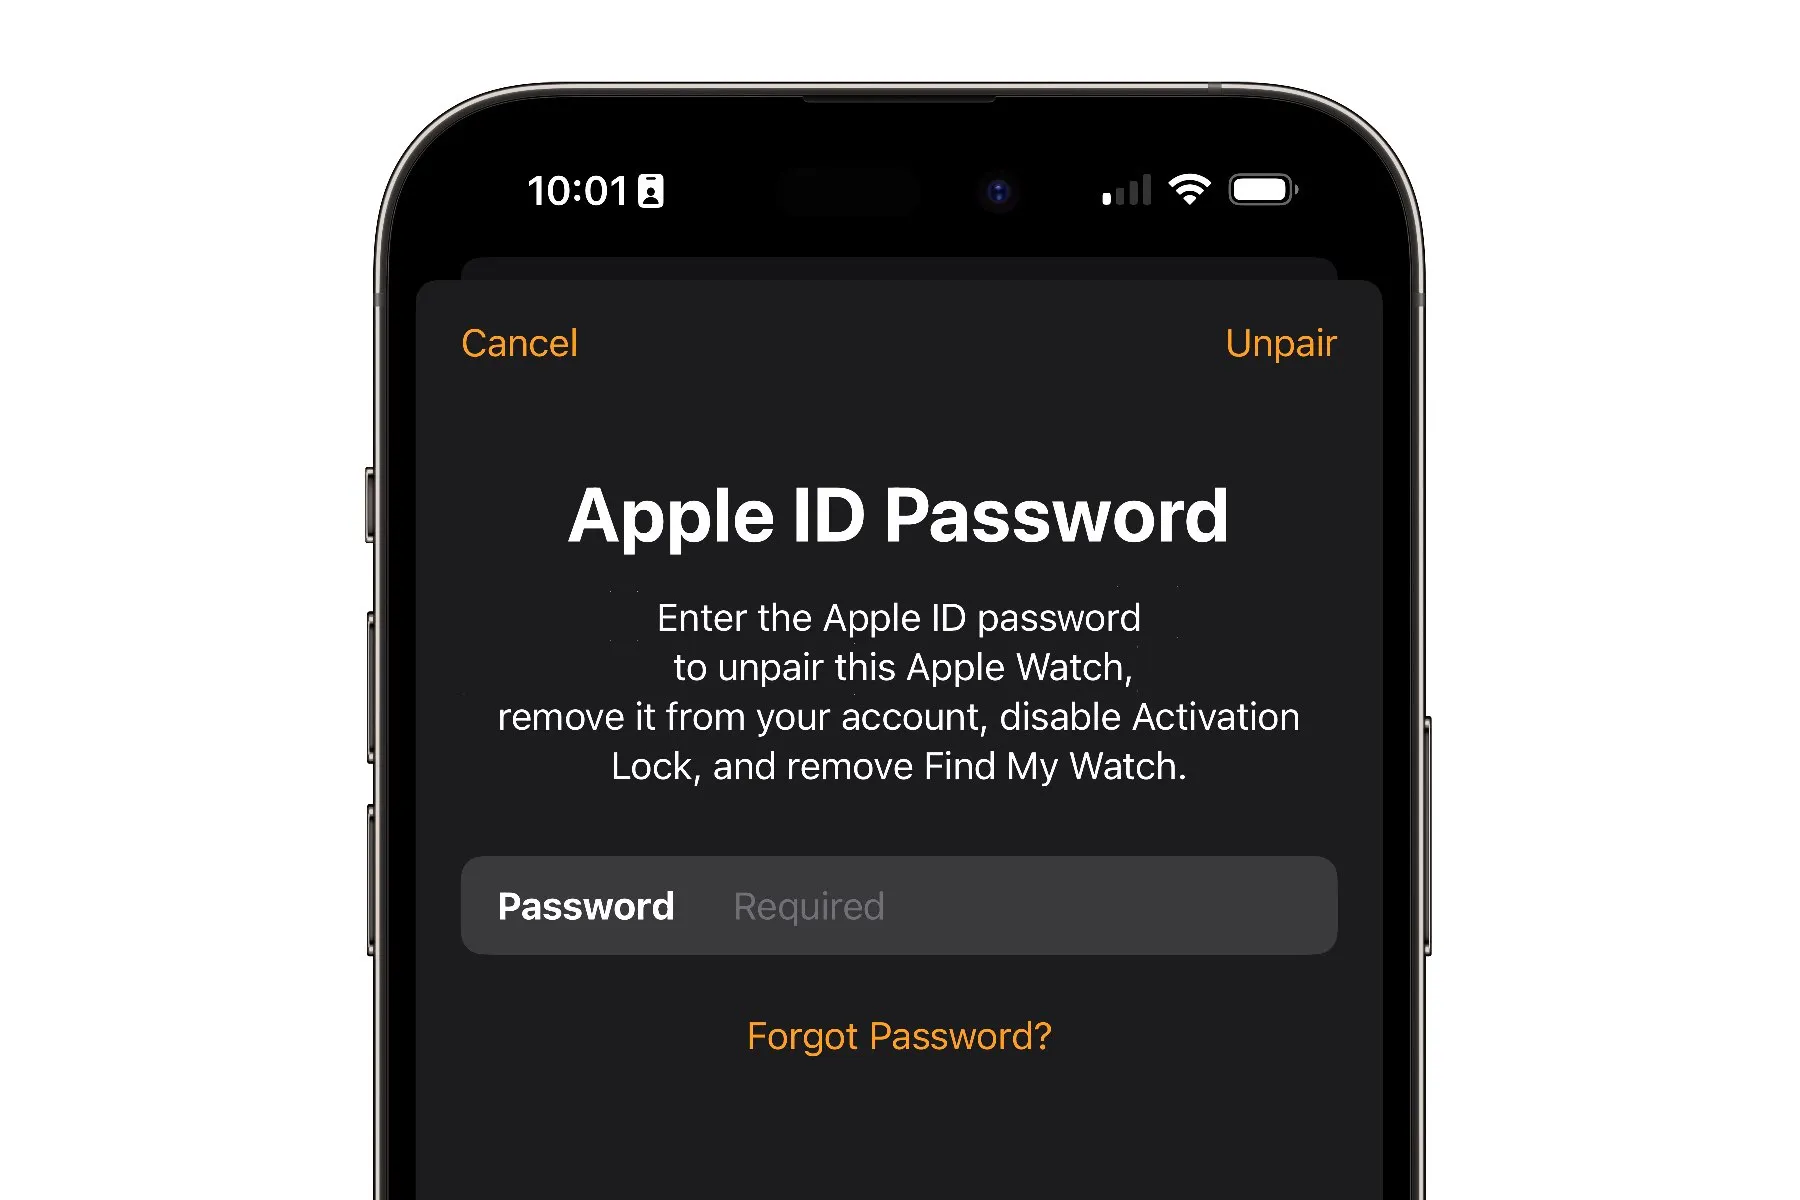 iPhone che mostra un prompt per inserire la password dell'ID Apple durante lo scollegamento dell'Apple Watch.